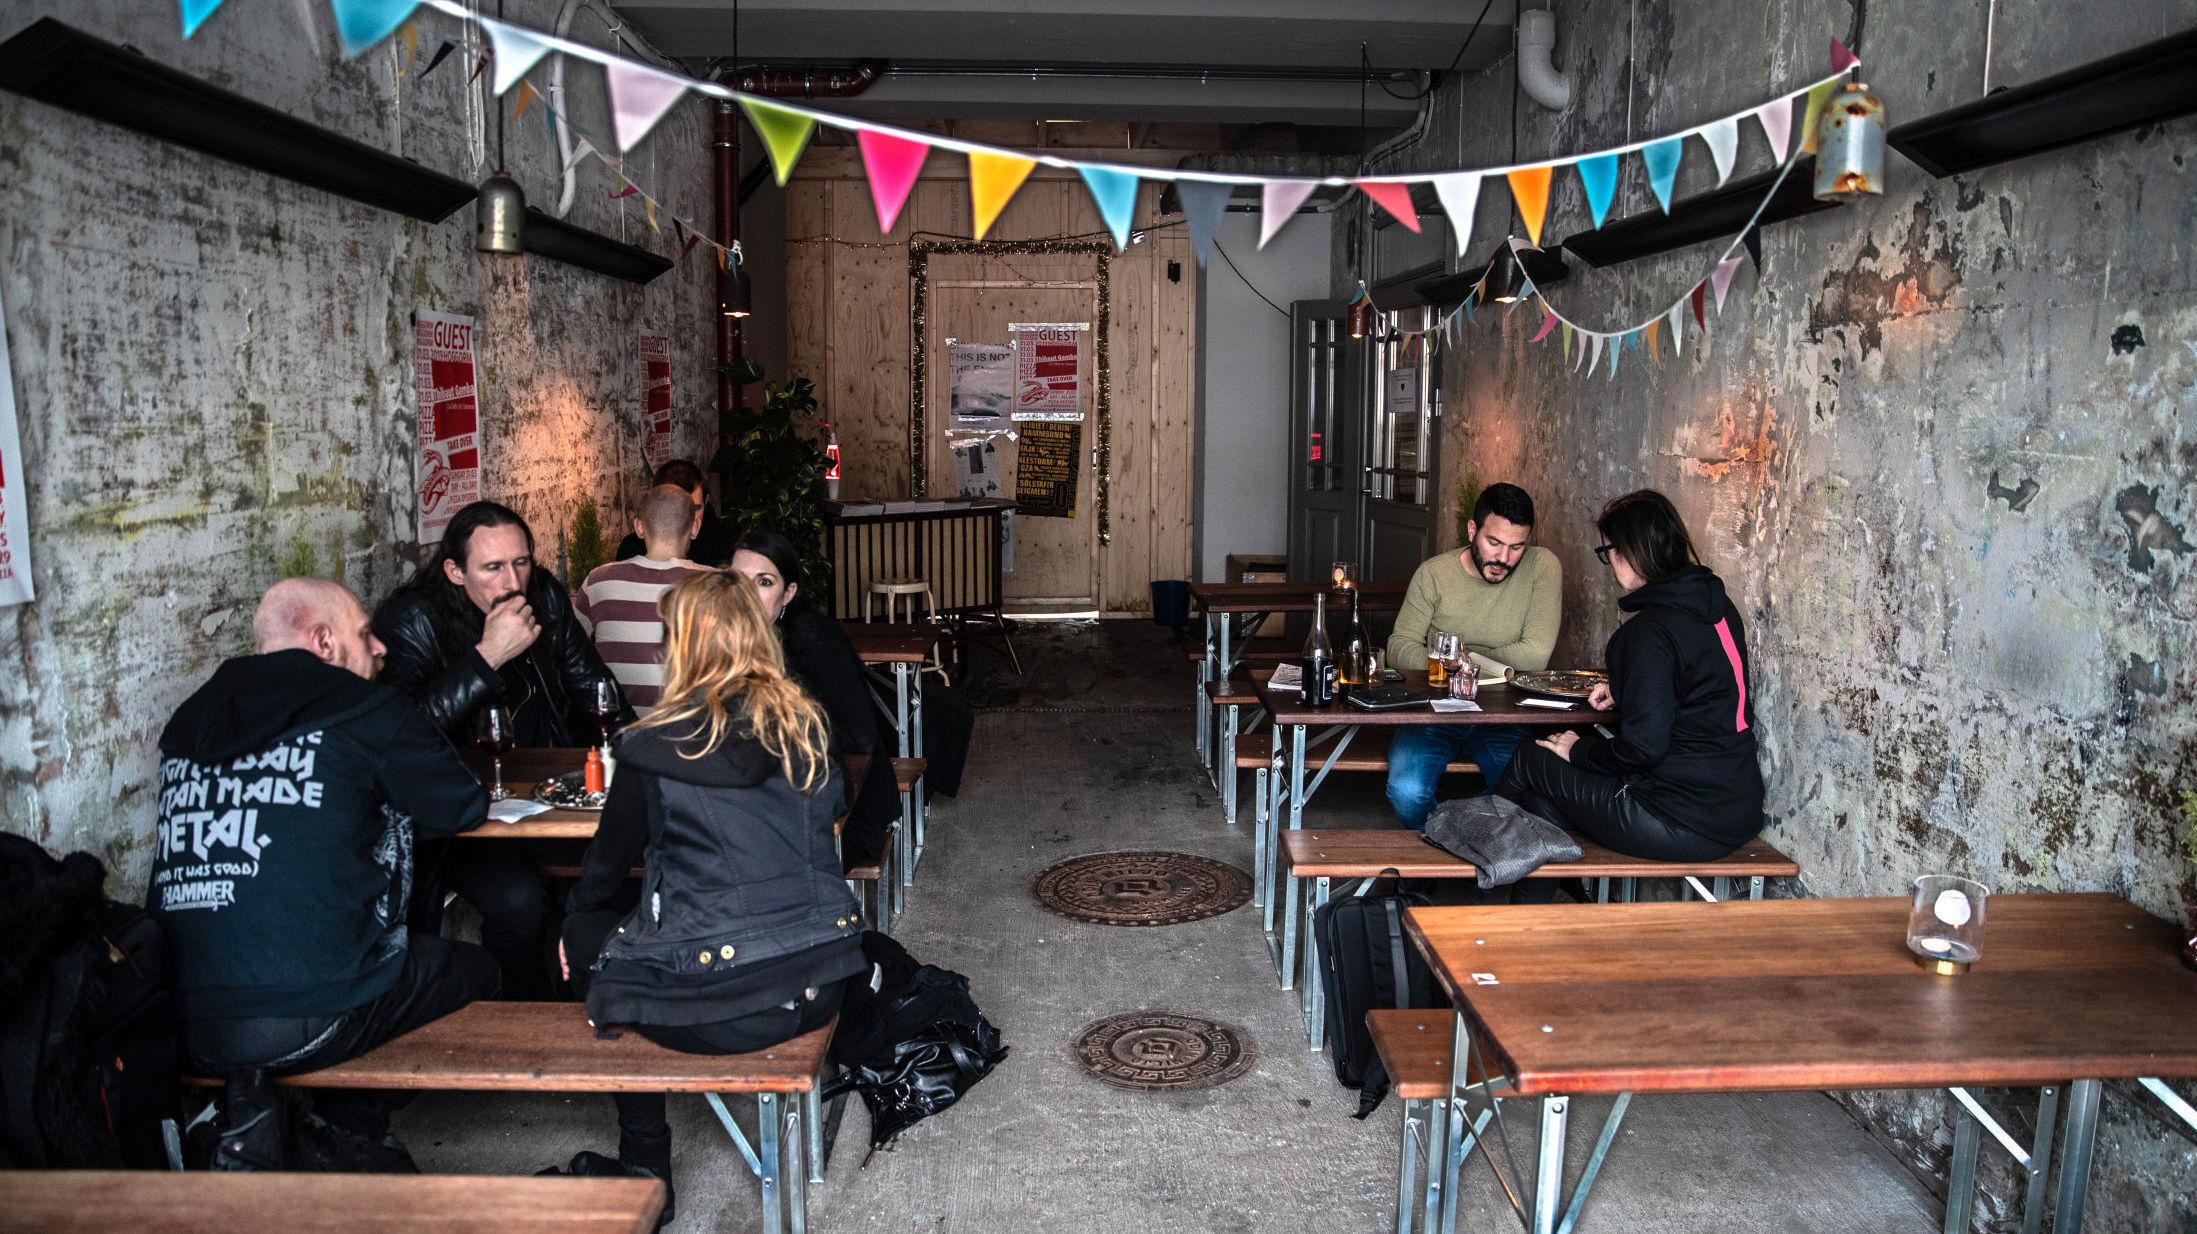 TERNINGKAST 6: Hoggorm i Bergen er mer en ungdomsklubb for voksne enn pizzeria på hjørnet, mener VGs restaurantanmelder. Foto: Hallgeir Vågenes/VG